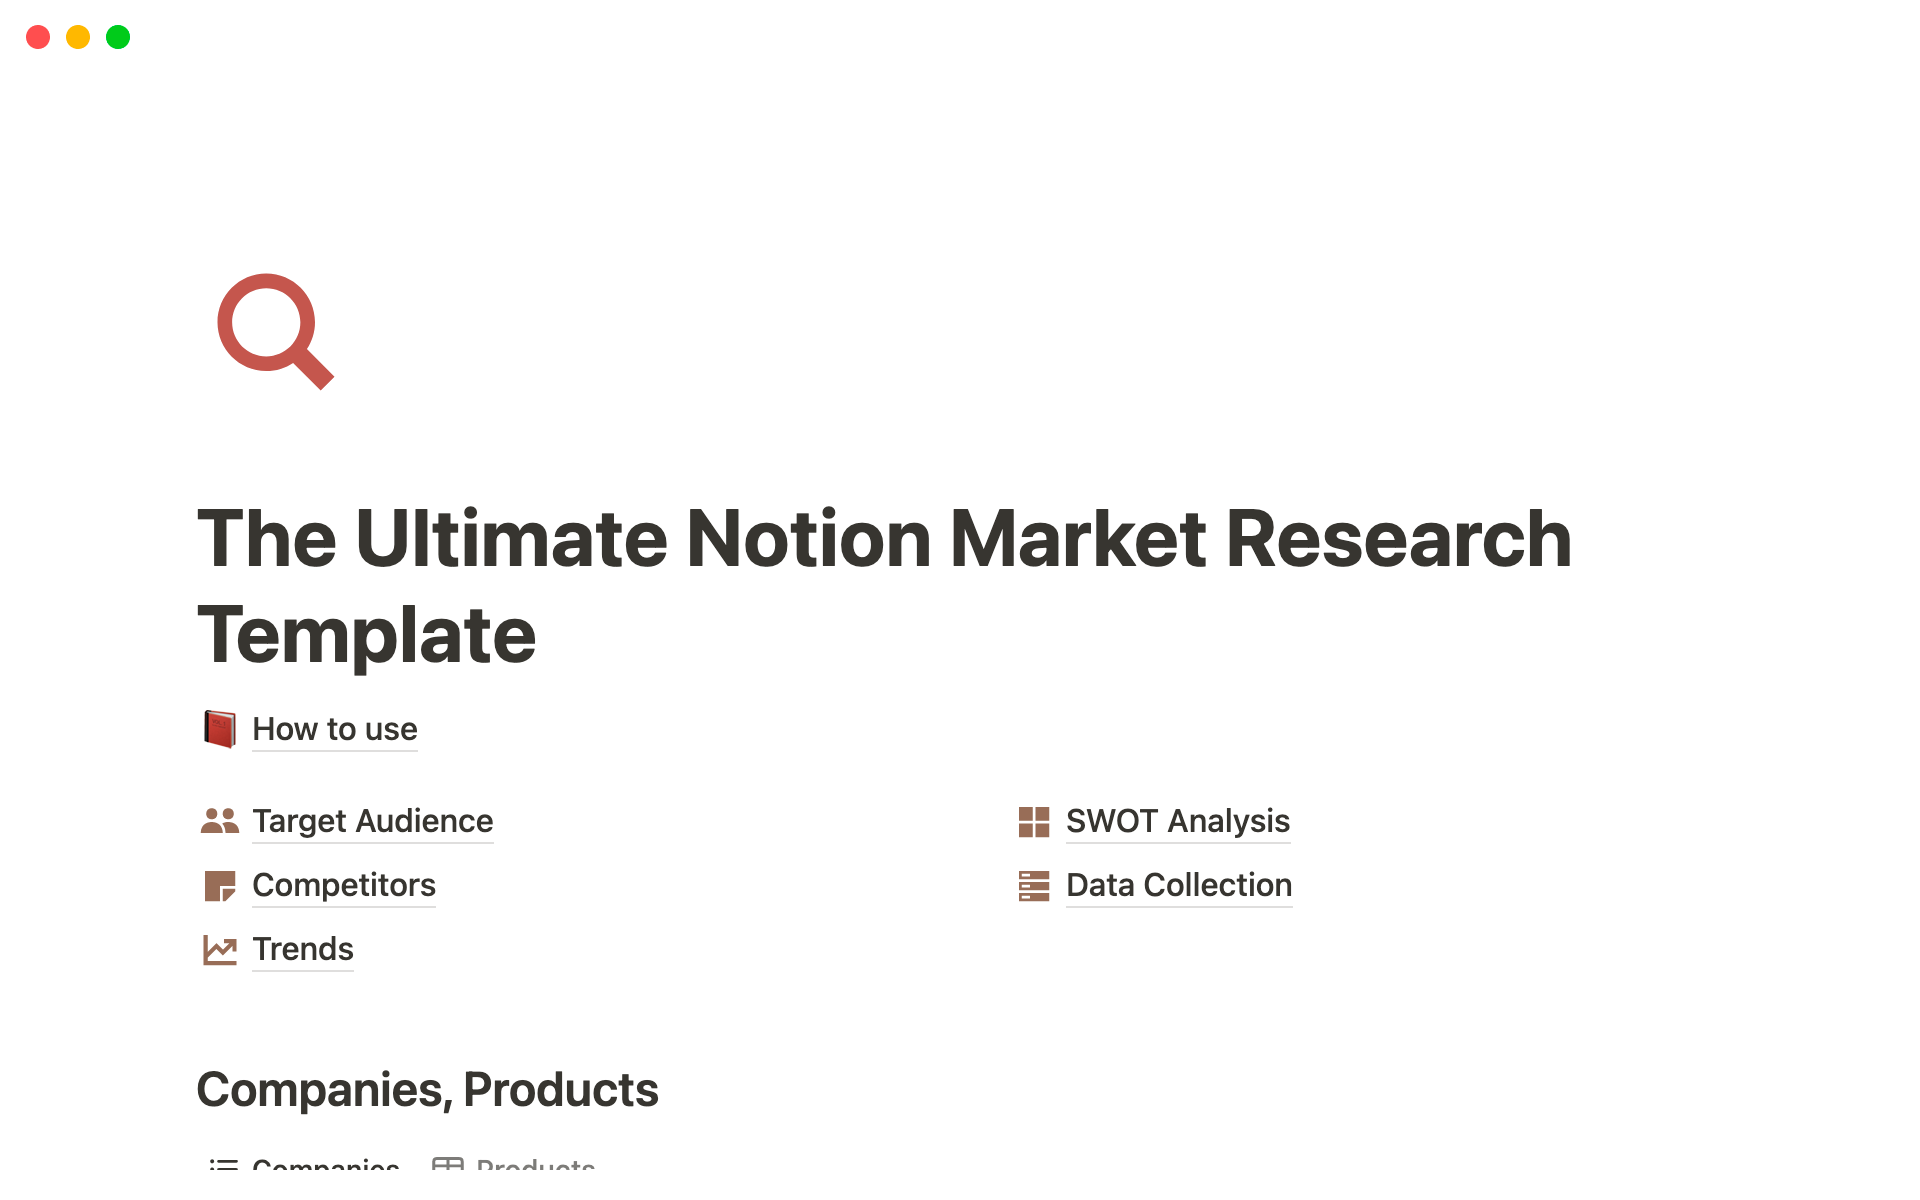 Vista previa de una plantilla para The Ultimate Notion Market Research Template